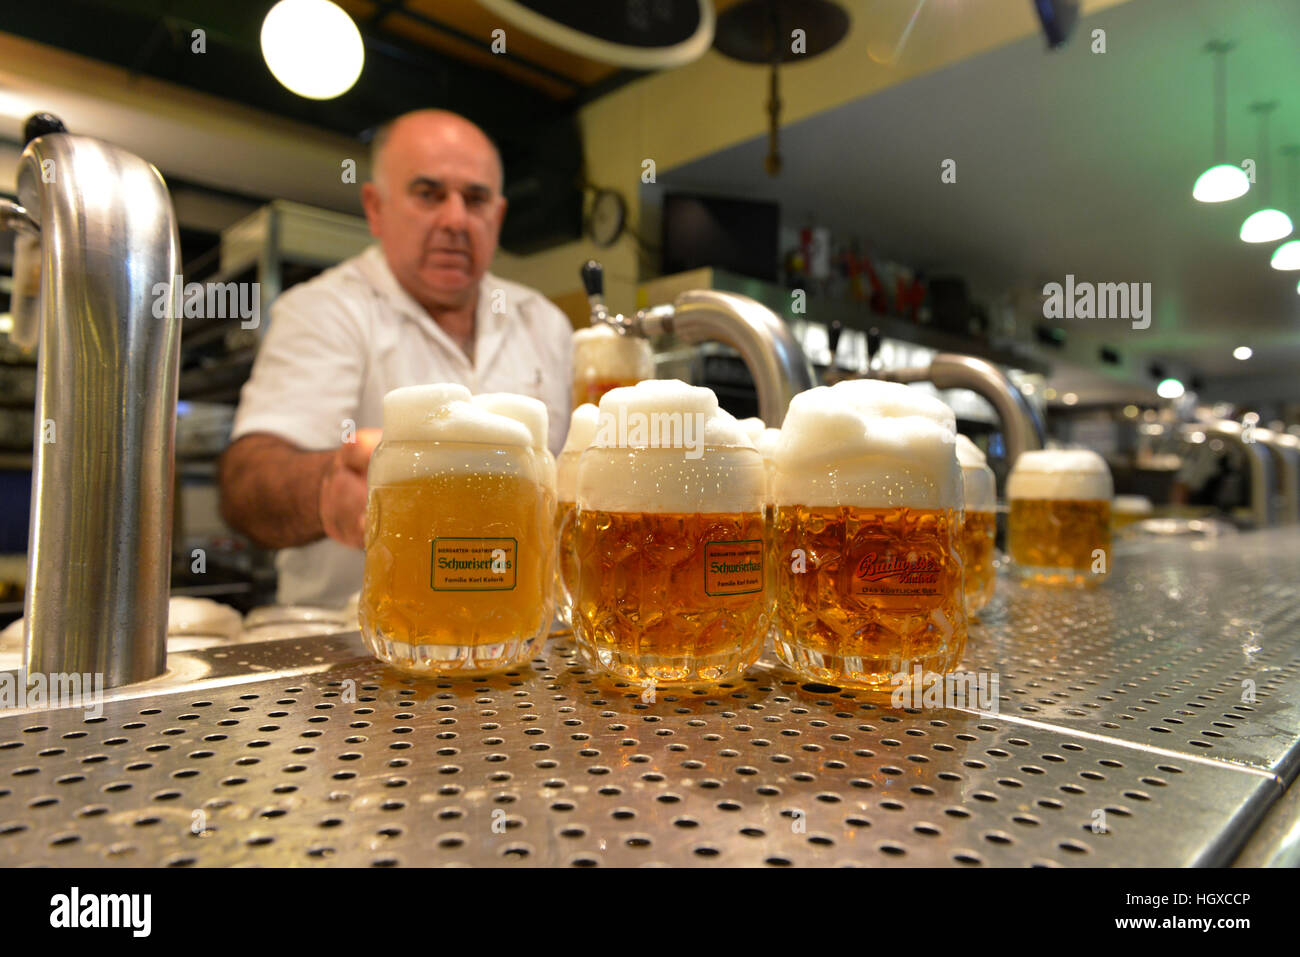 Bier, Schweizerhaus, Prater, Wien, Oesterreich Stockfotografie - Alamy